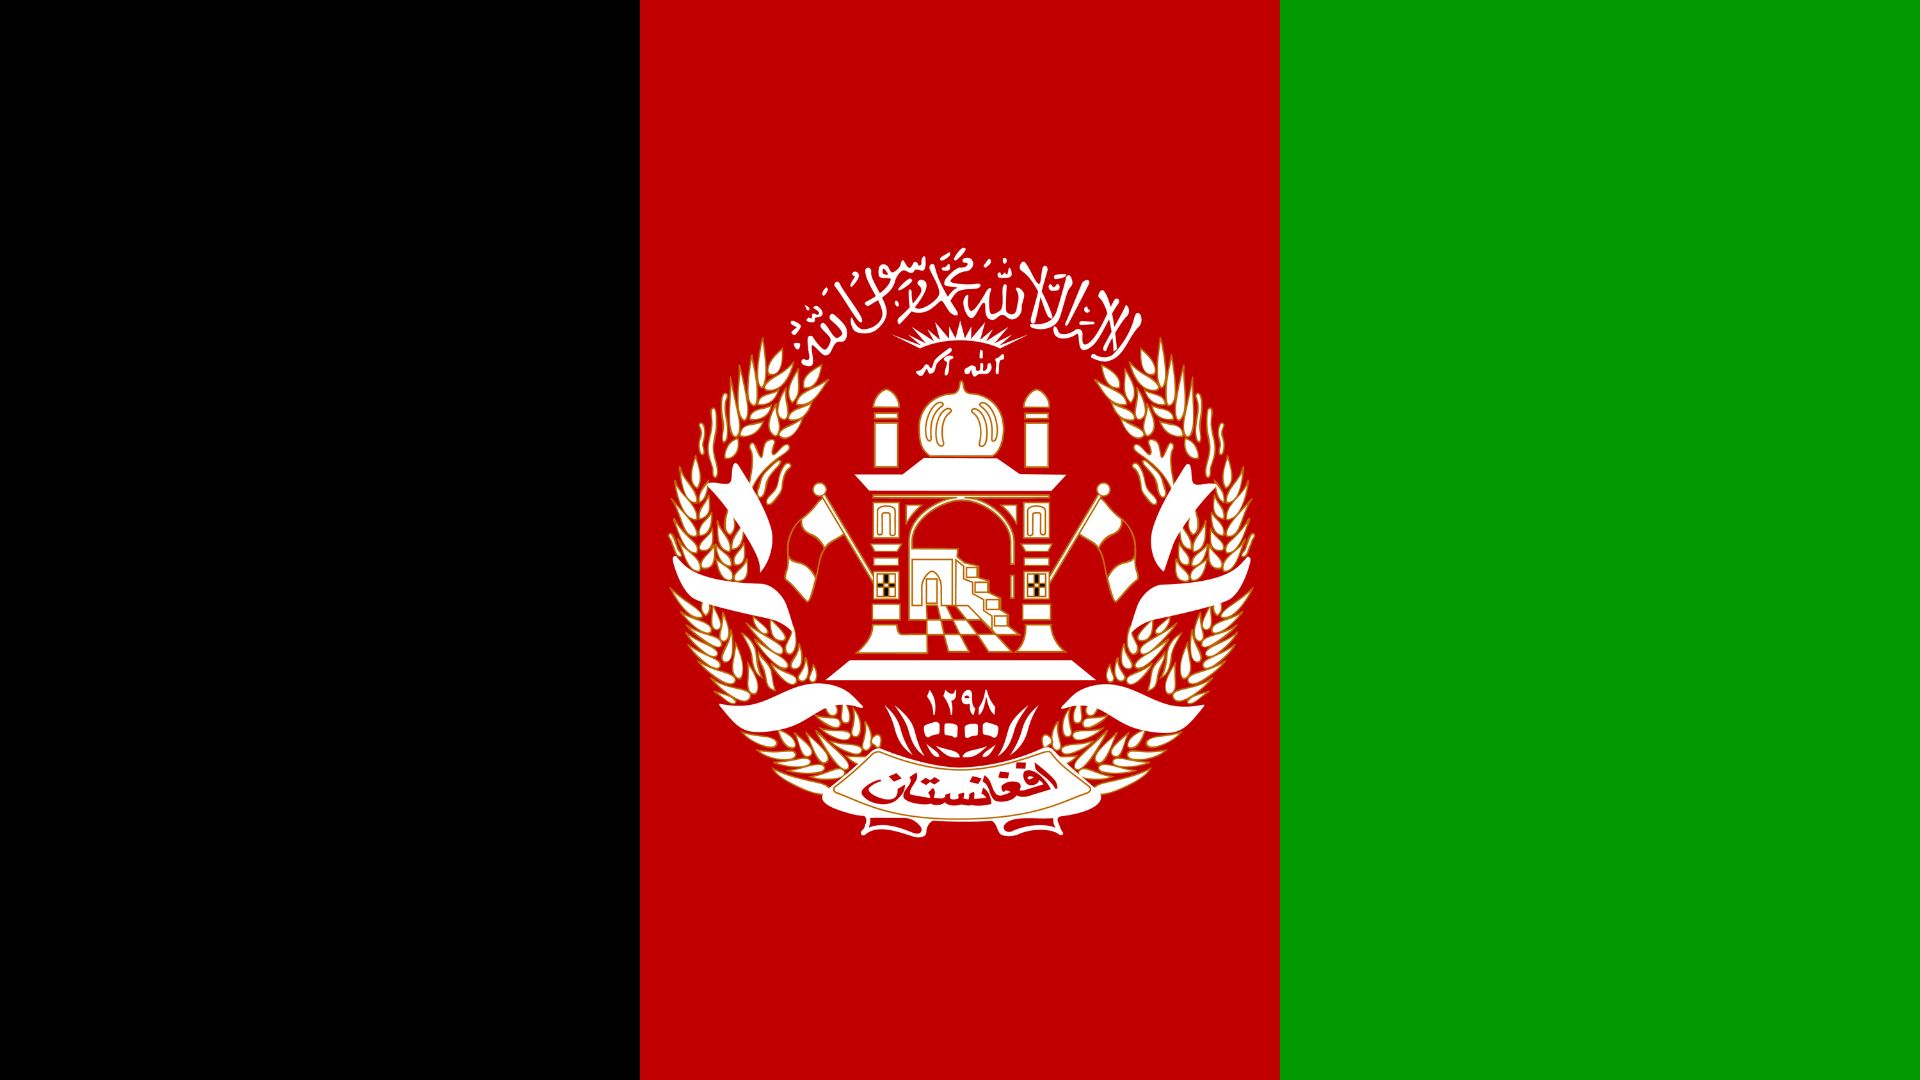 A bandeira do Afeganistão é completamente branca e apresenta uma Chahada em preto no centro. A cor branca representa 'a pureza de fé e de governo' do Estado Islâmico do Afeganistão.